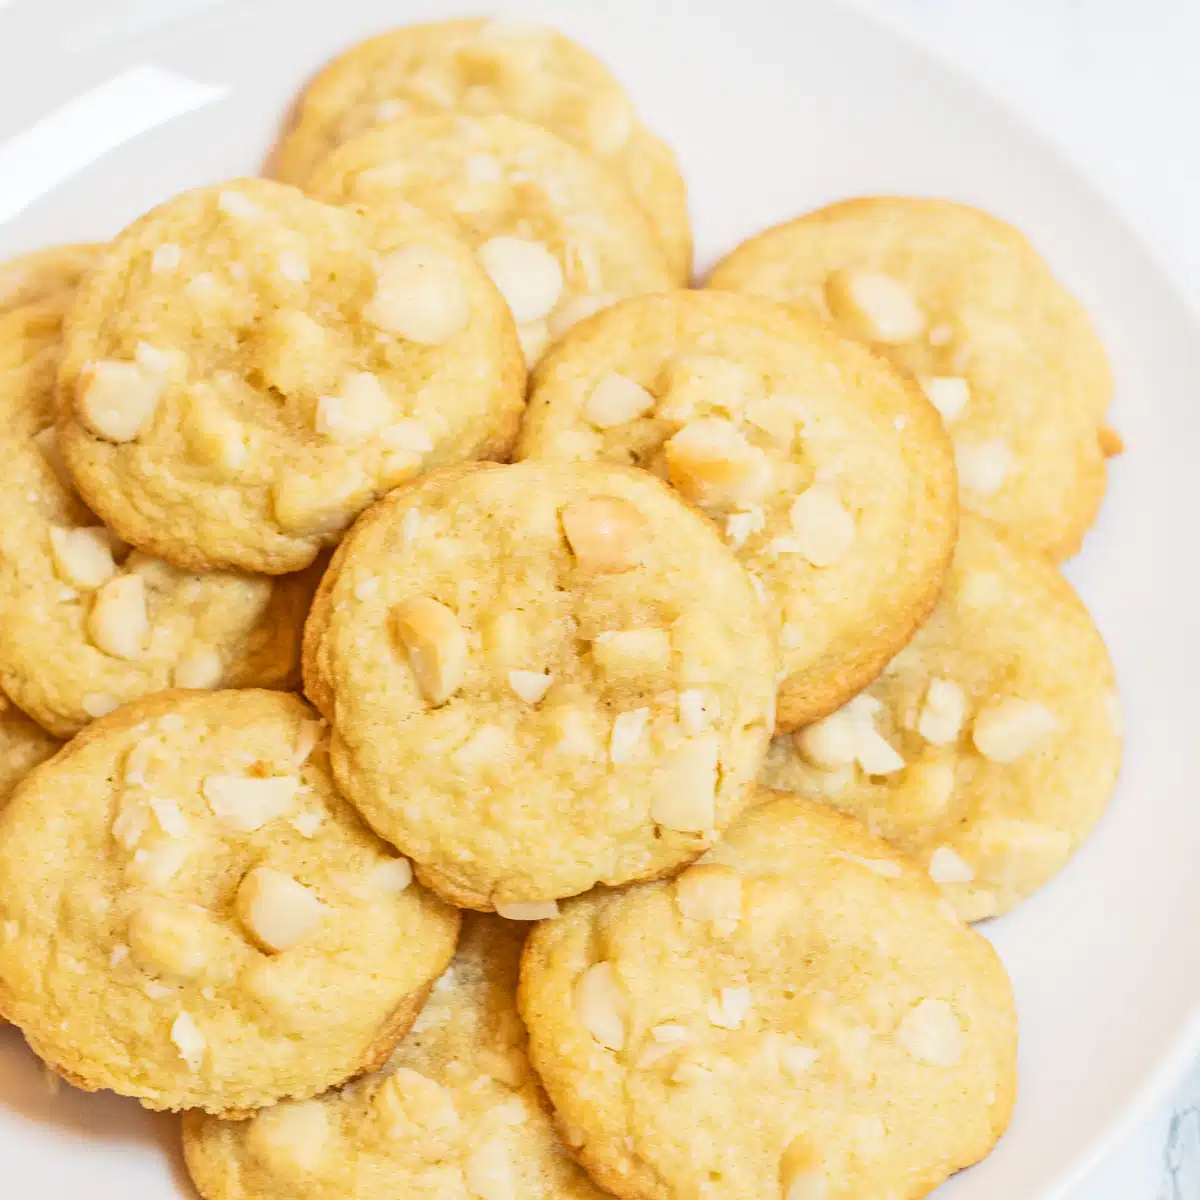 Resipi biskut kacang macadamia terbaik dihidangkan di atas pinggan putih setelah sejuk.